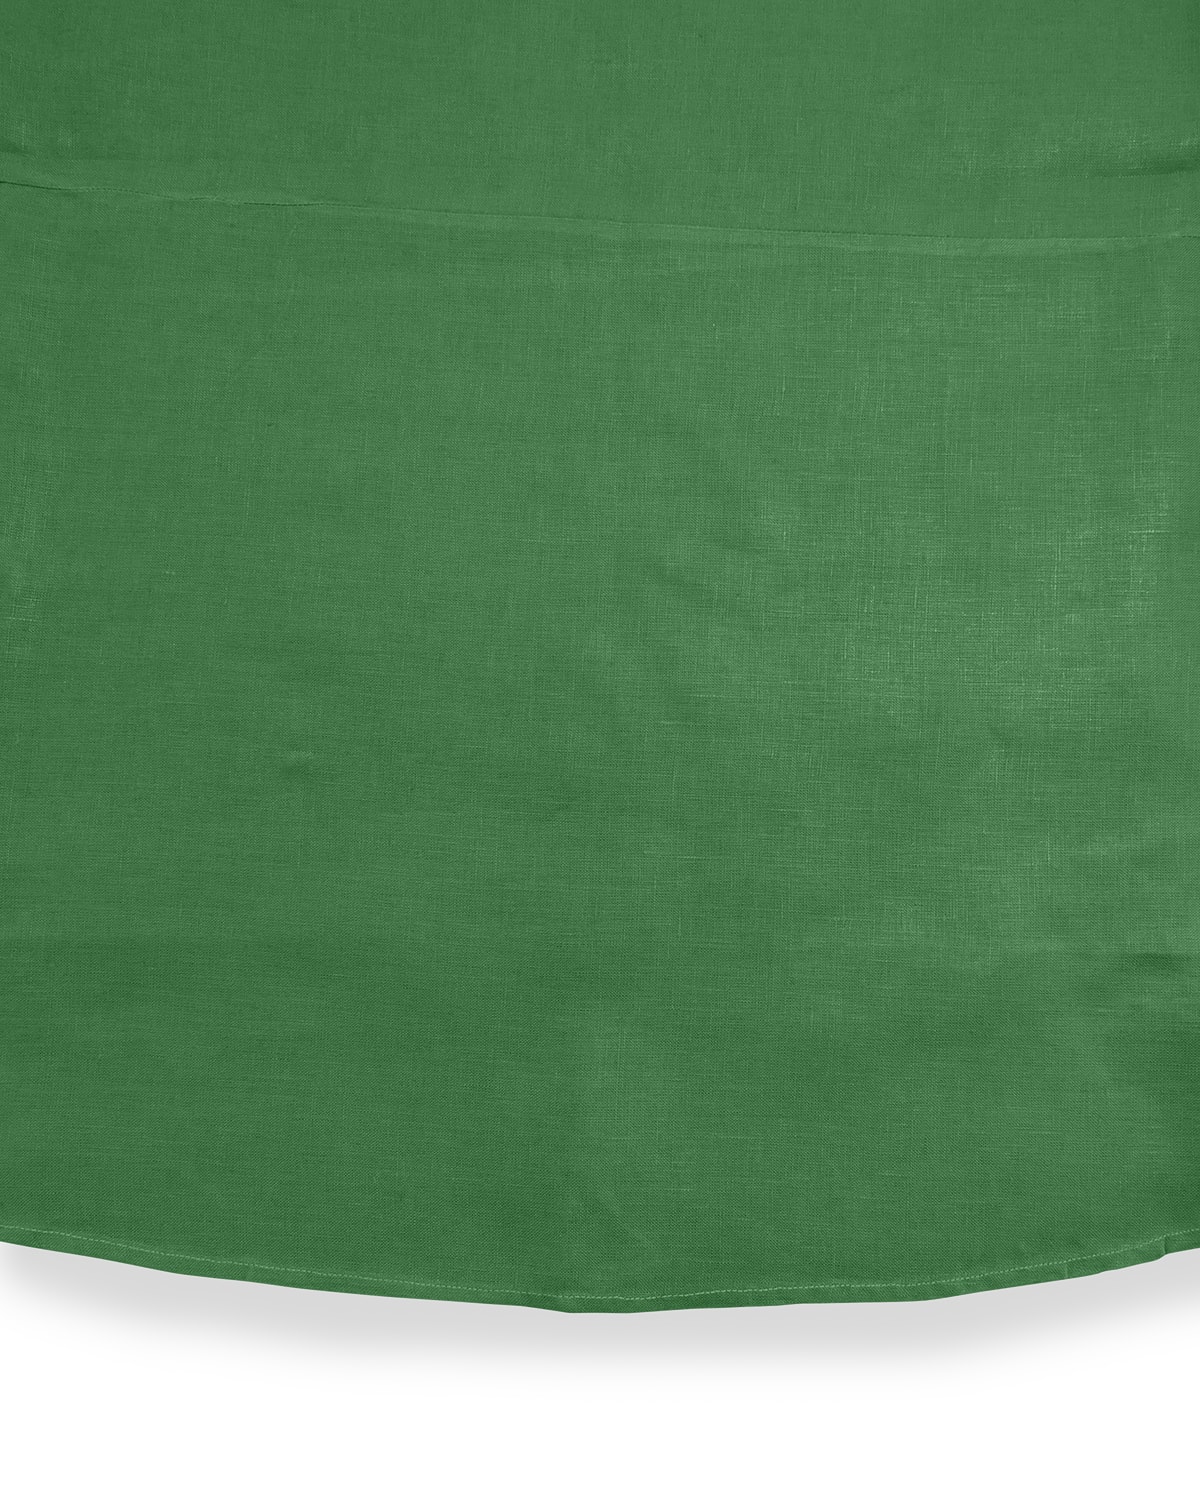 Shop Sferra Hemstitch Round Tablecloth, 90"dia. In Emerald